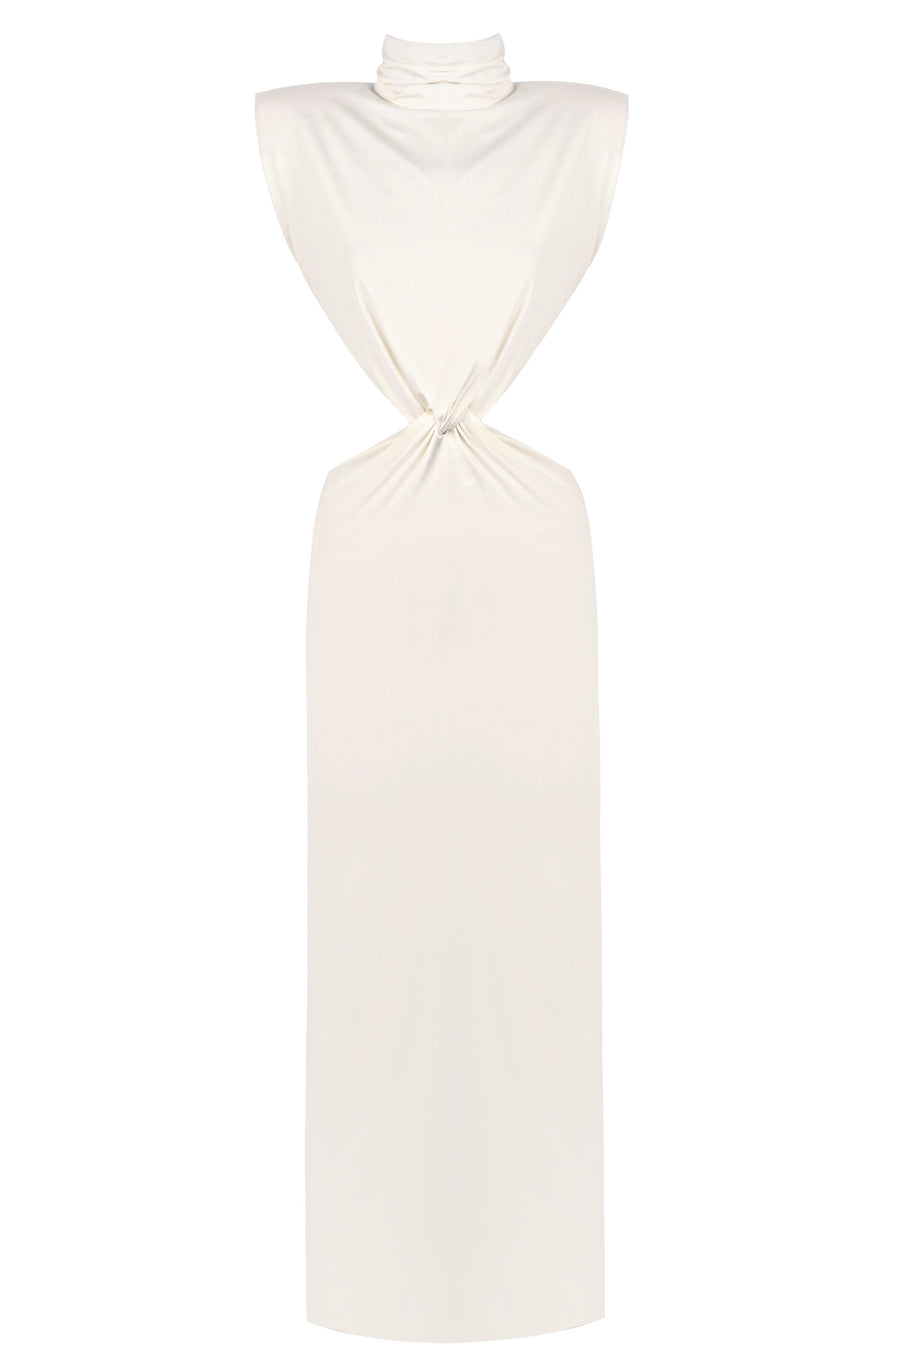 The Edyth White Long Dress